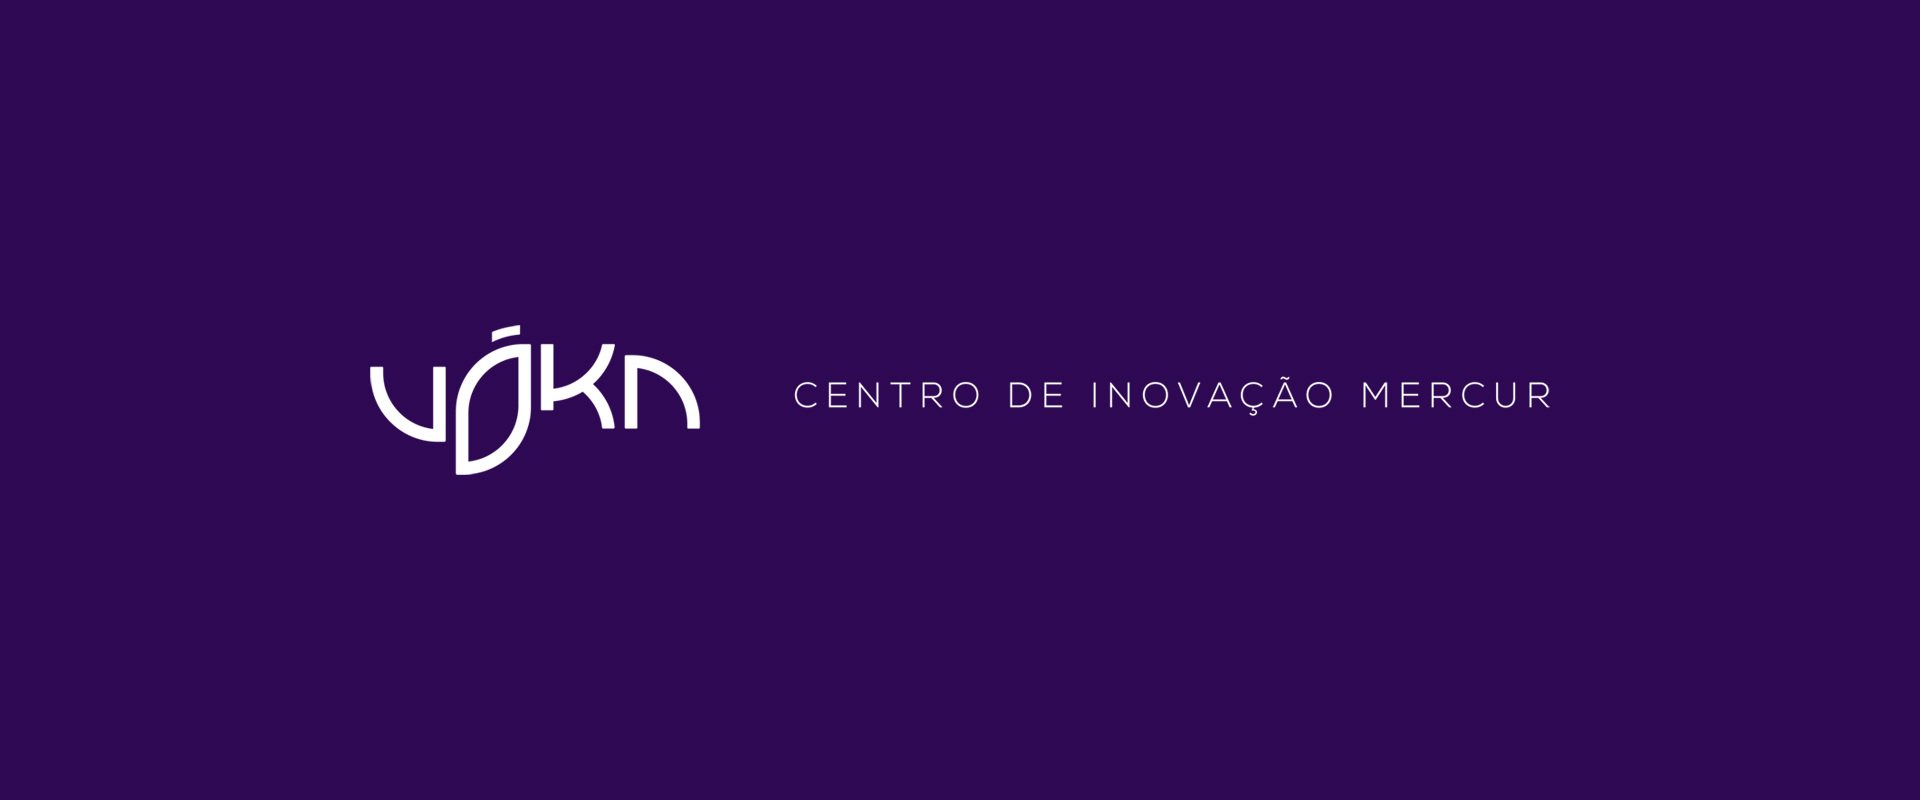 Mercur lança Centro de Inovação, a Vóka